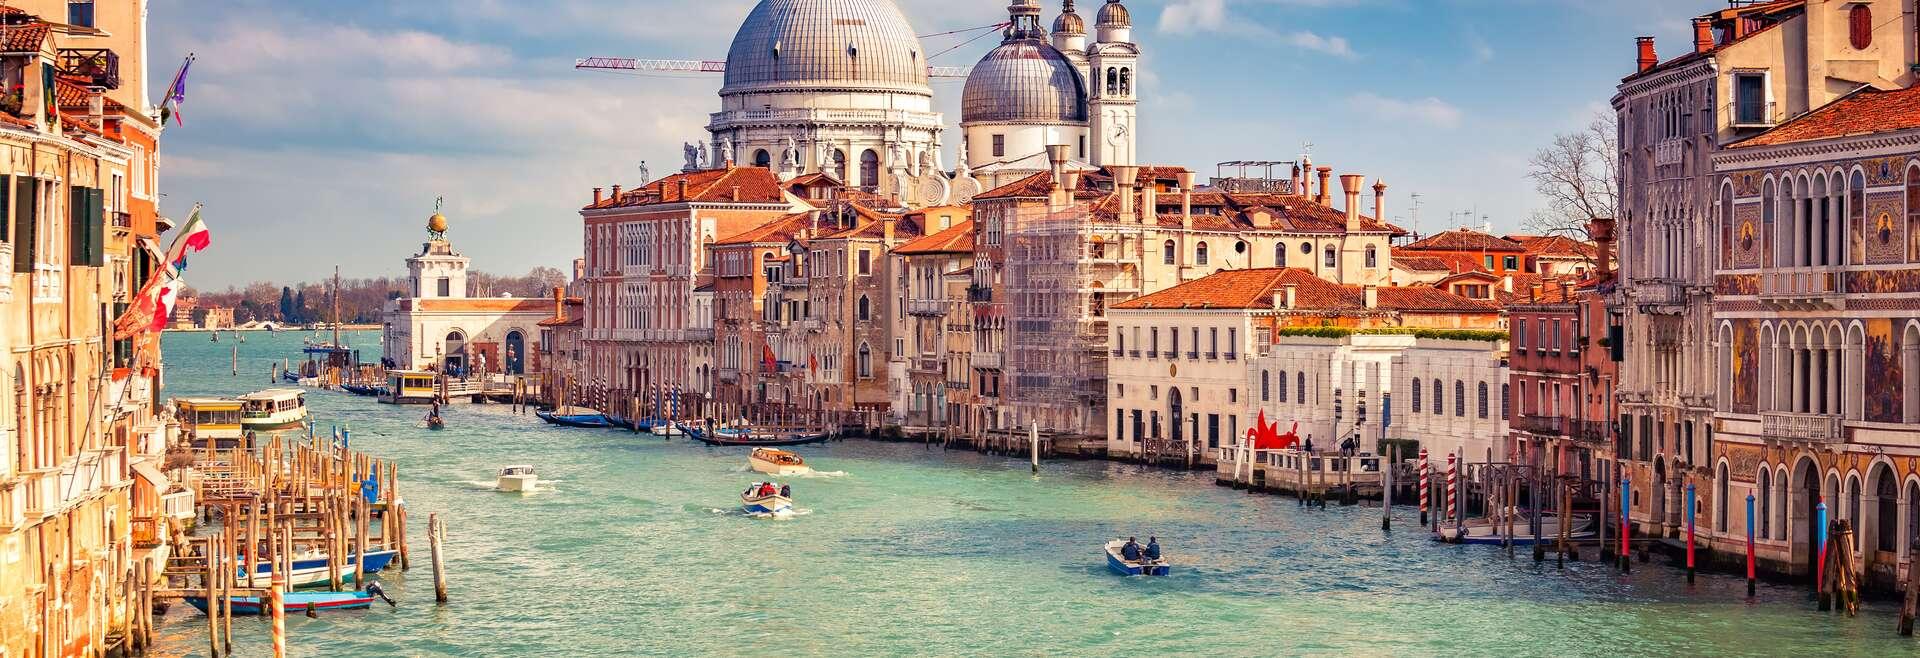 Séjour linguistique Italie, Venise - Canale Grande